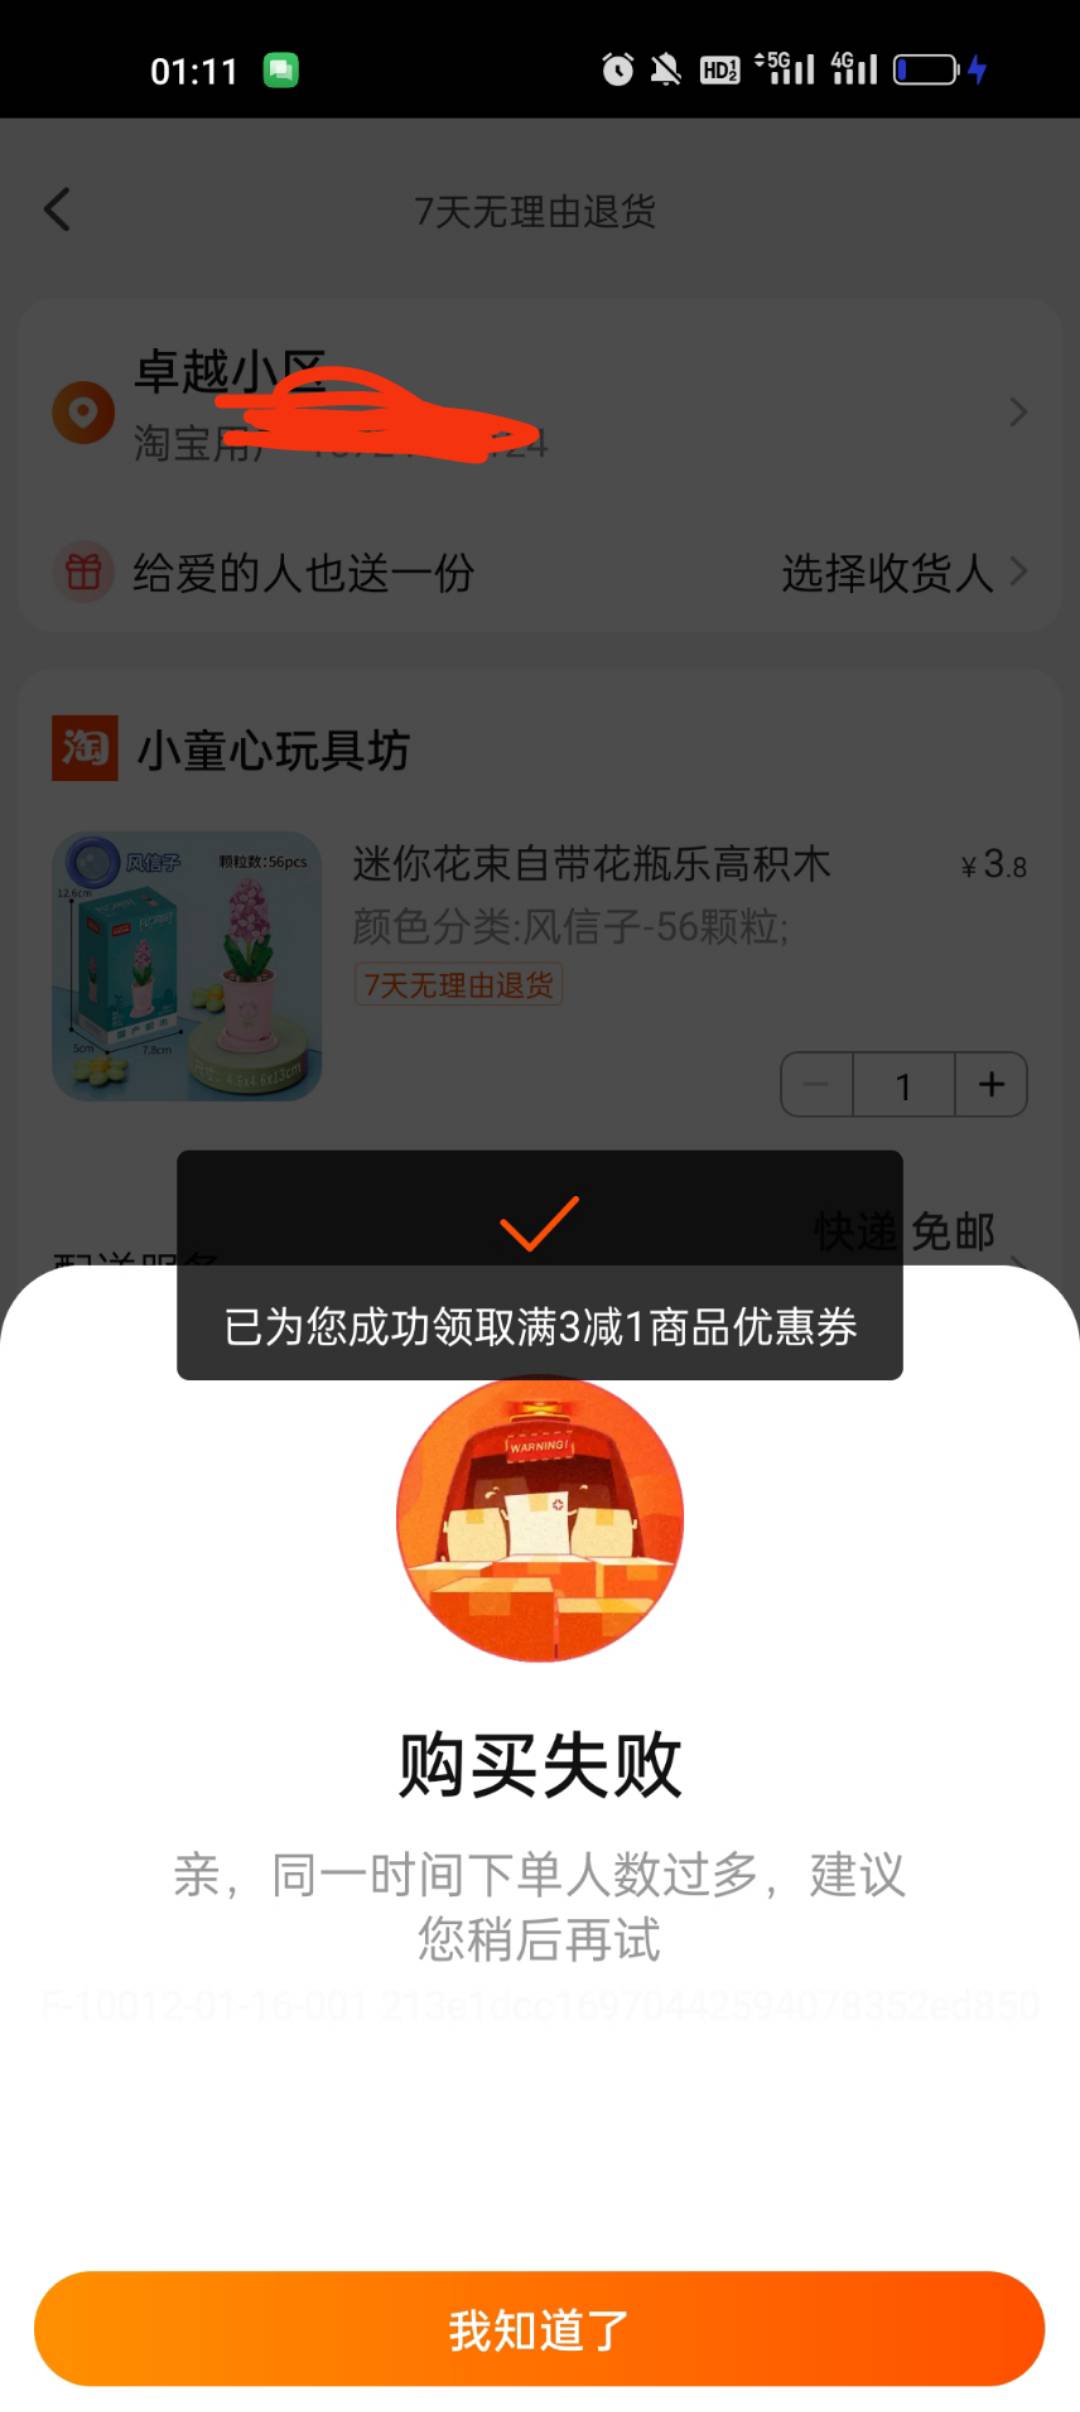 淘宝多号多申请，虚拟定位北京邮电大学，然后直接认证会成功，出来上传的那种直接换号44 / 作者:如果可以没有。 / 